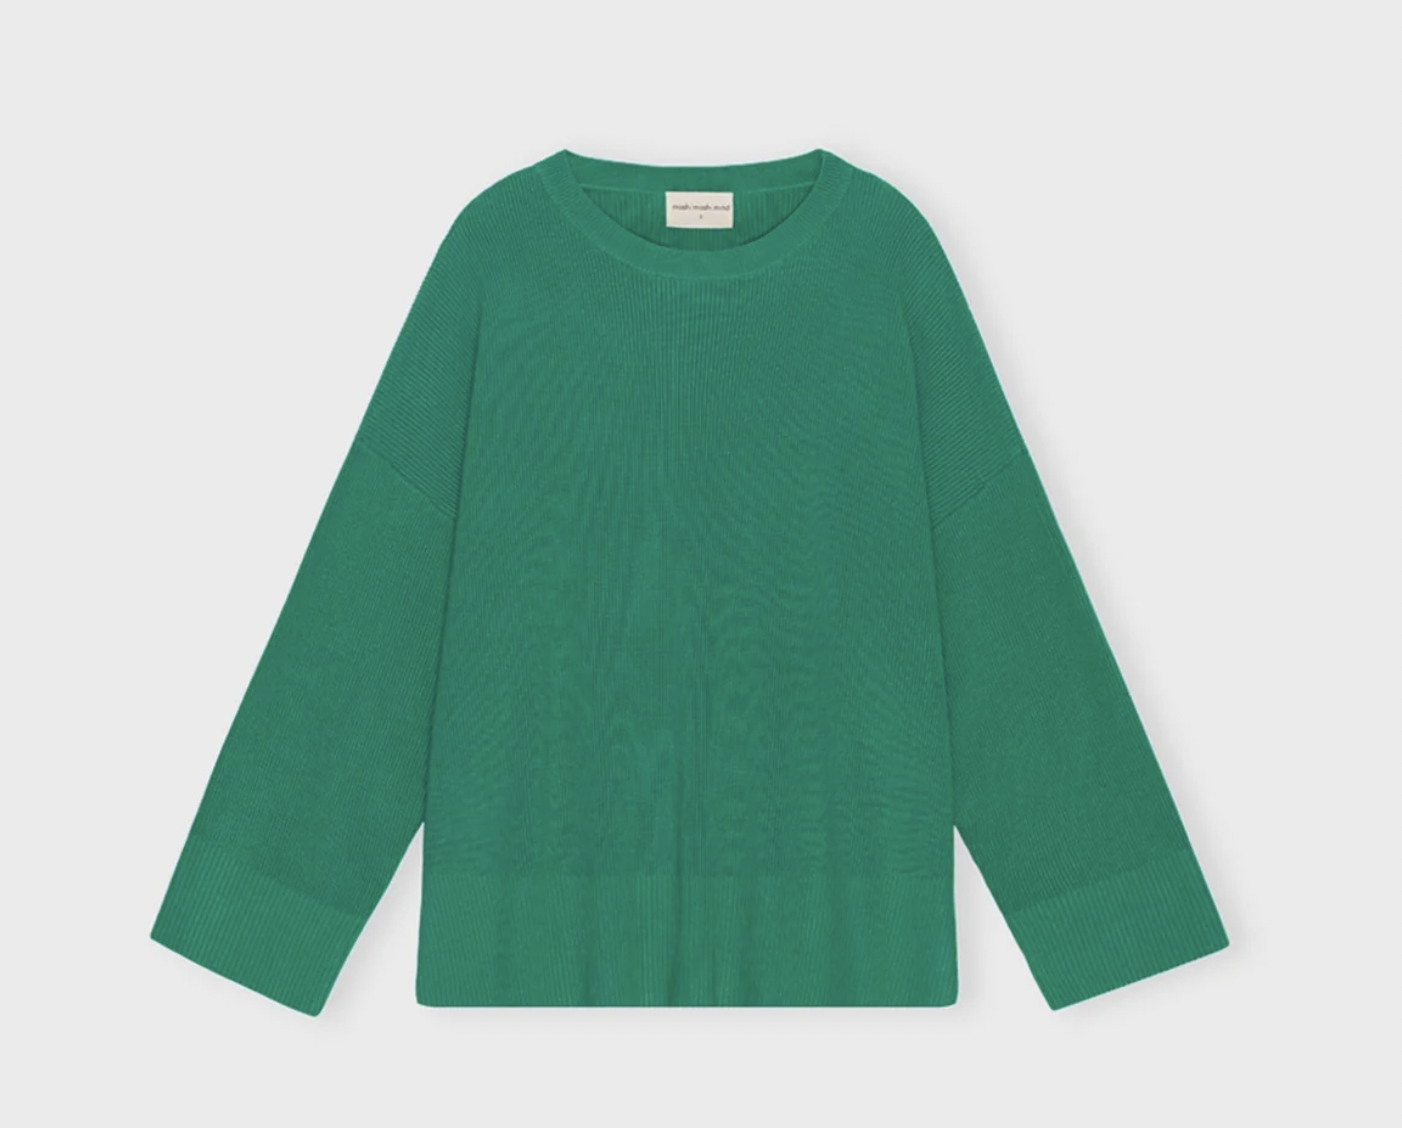 grön ribbstickad sweater i lensing ecovero viscose från Moshi Moshi Mind